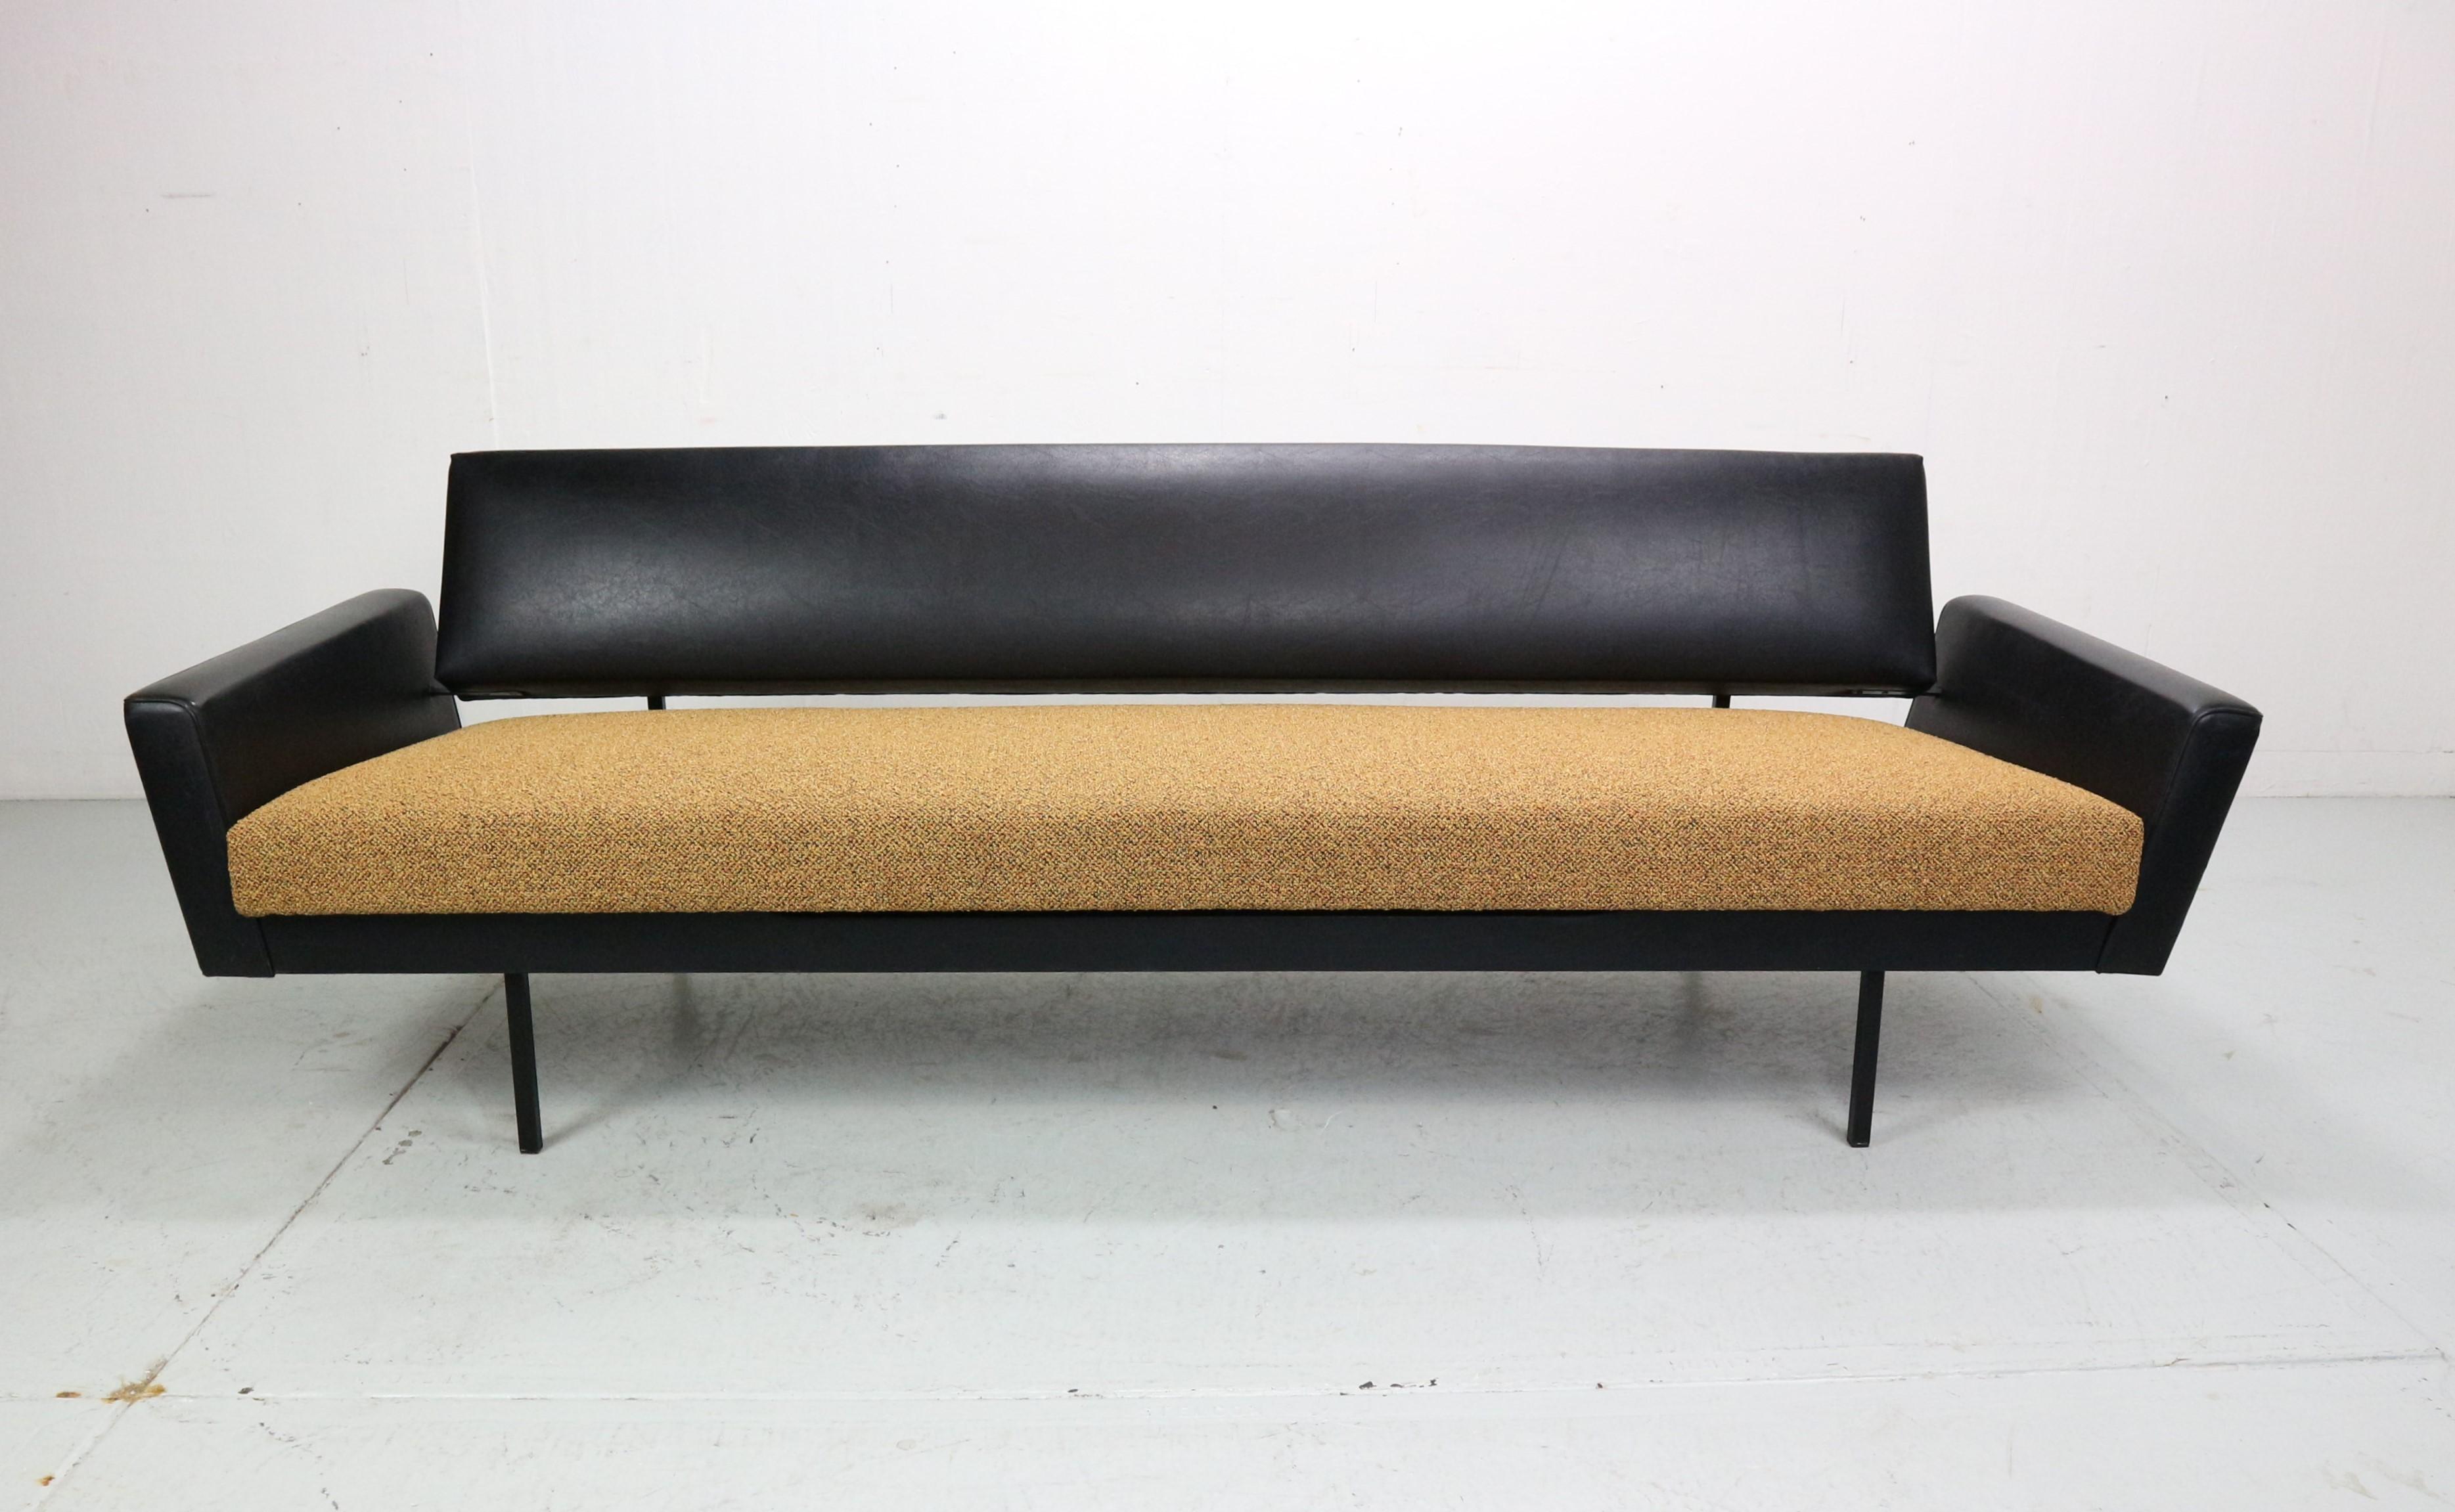 Ce canapé est conçu par Rob Parry et produit par Gelderland. Ce modèle spécifique avec accoudoirs rembourrés est assez rare. La partie assise du canapé peut facilement être tirée en position plate, ce qui permet de s'y reposer confortablement pour